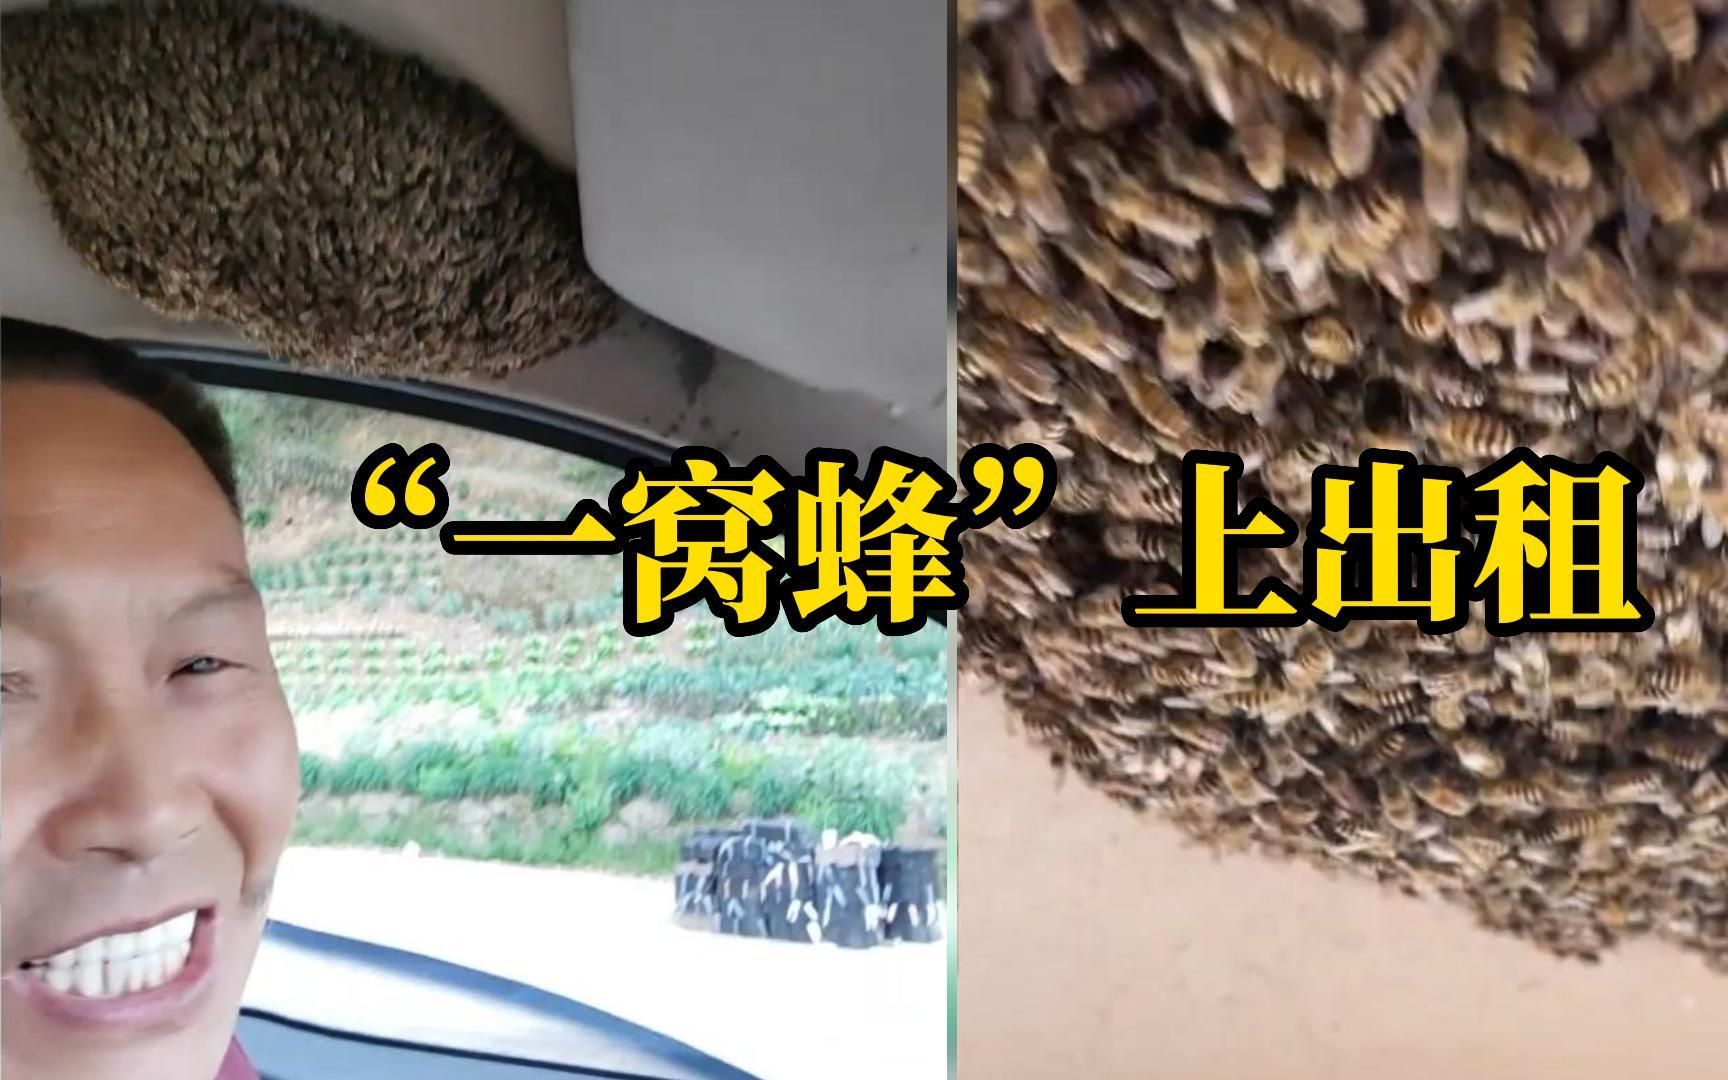 女子乘车遇车内一窝蜂，司机还笑着拍视频：发财咯